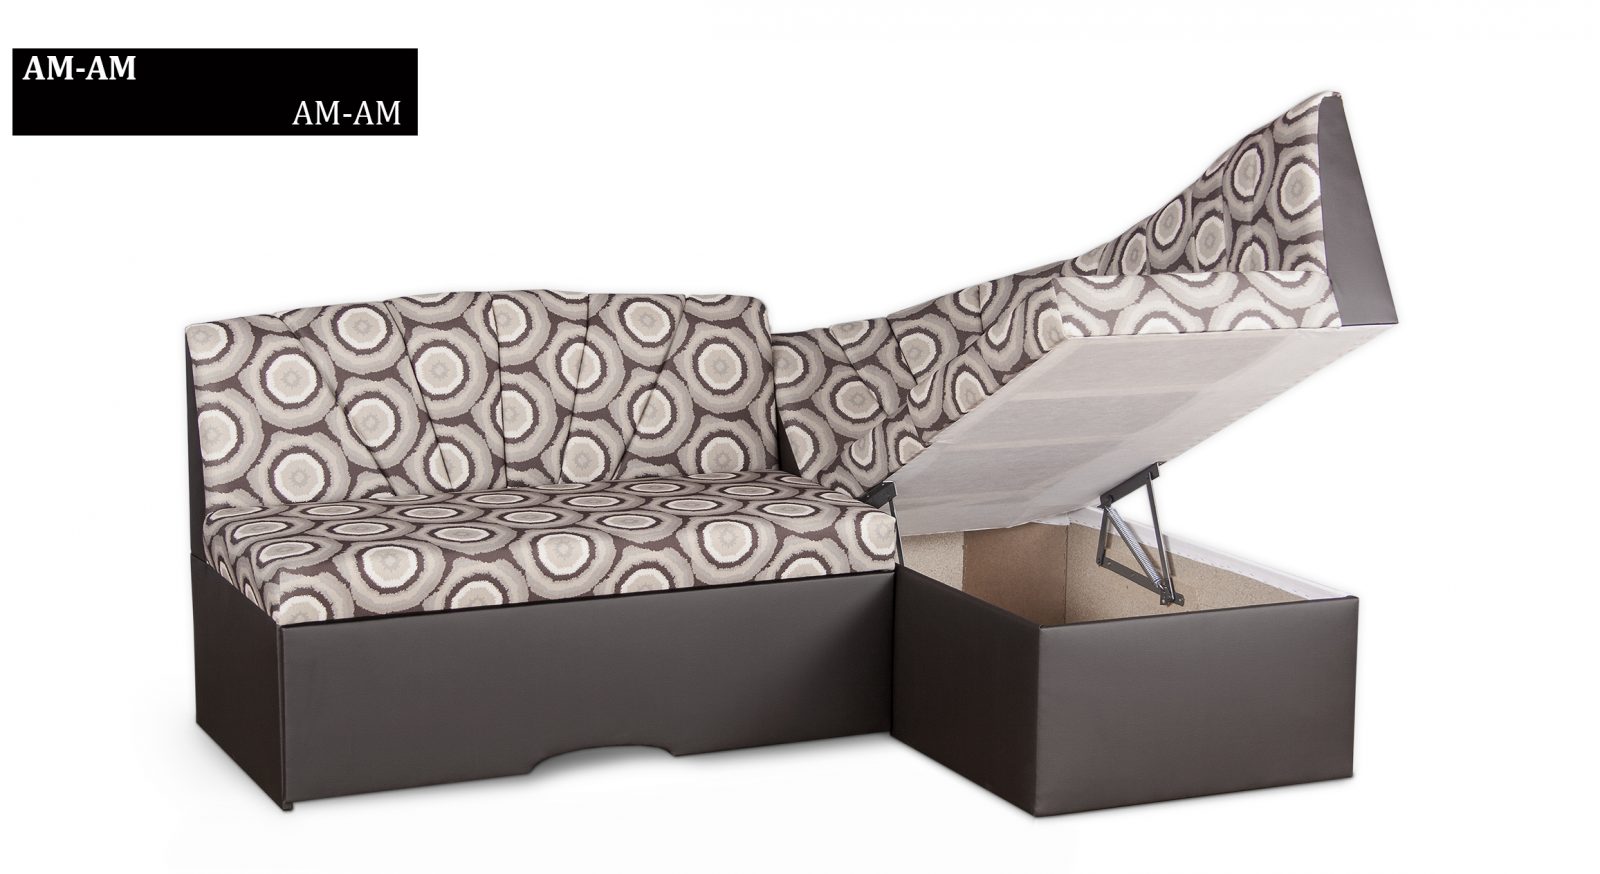 (Български) Трапезен ъглов диван  | стандарт |»АМ-АМ»| Руди-Ан